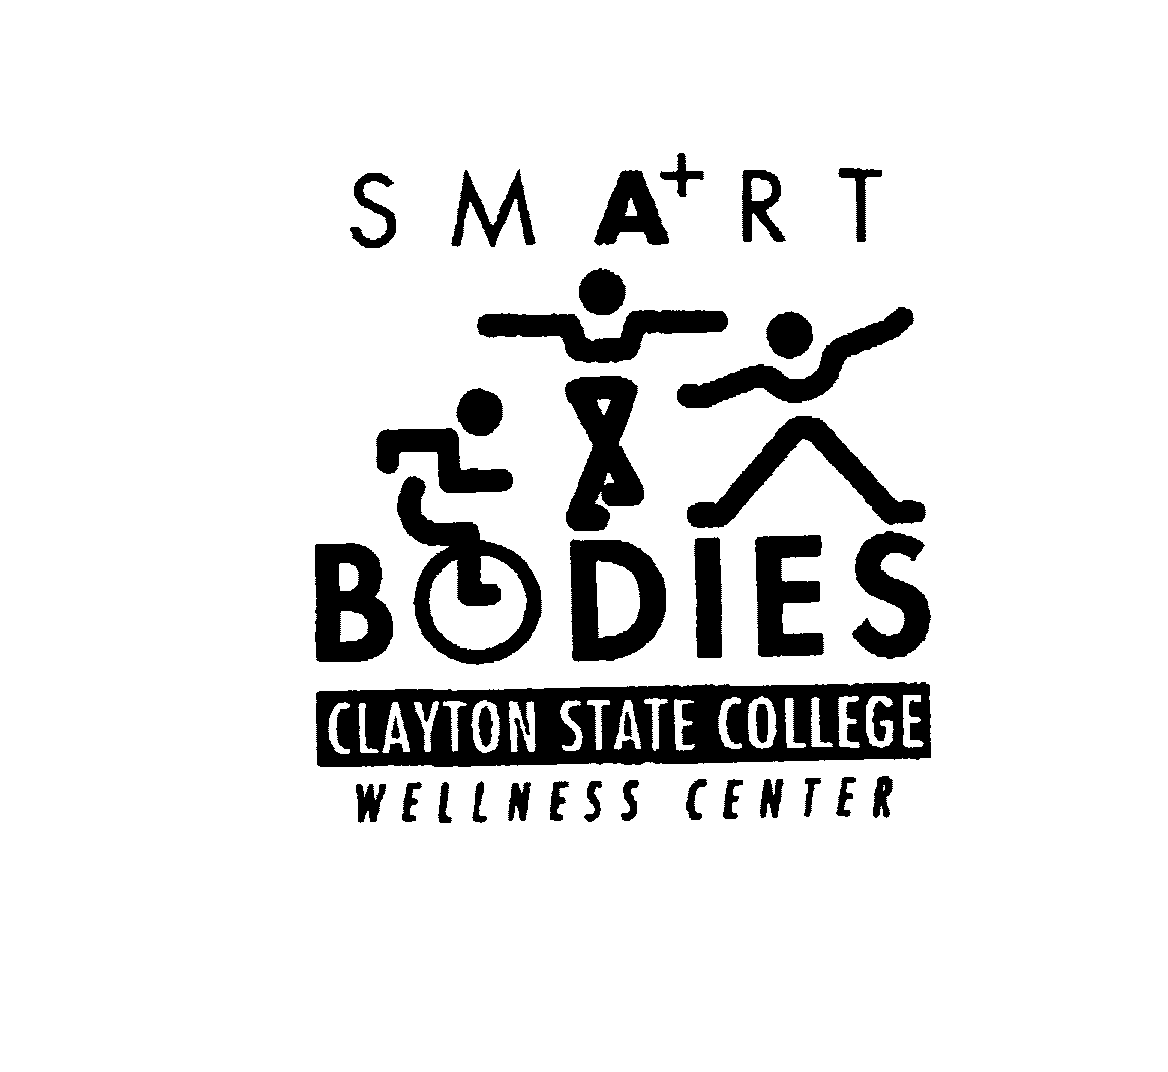  SMART BODIES CLAYTON STATE COLLEGE WELLNESS CENTER